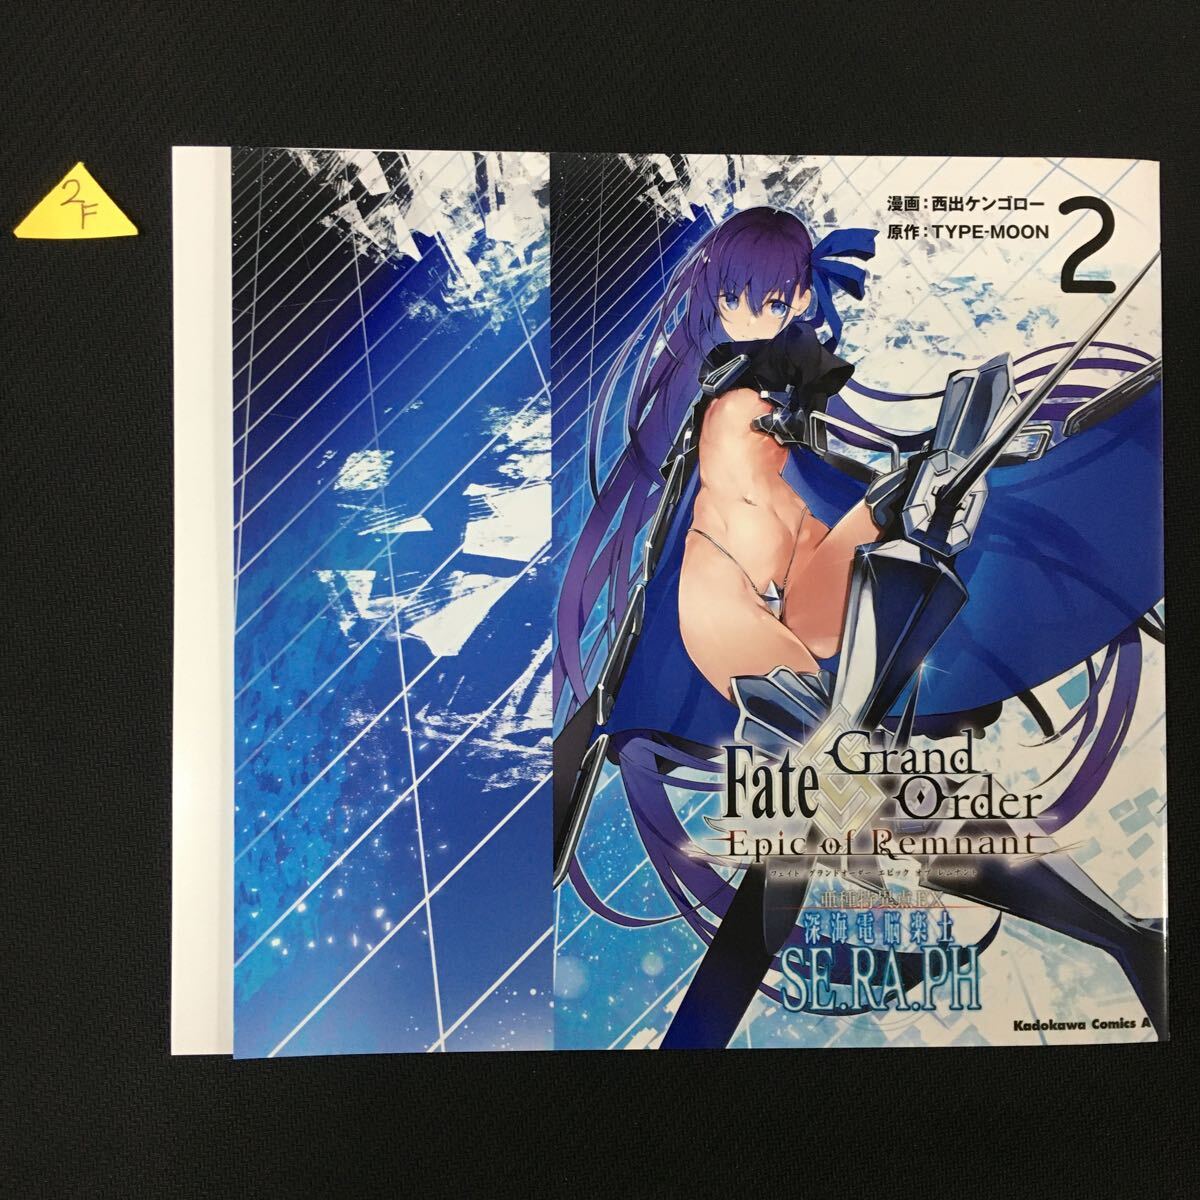 Fate/Grand Order−Epic of Remnant−亜種特異点EX深海電脳楽士SE.RA.PH 2巻 ゲーマーズ購入特典オリジナルブックカバー 2Fの画像1